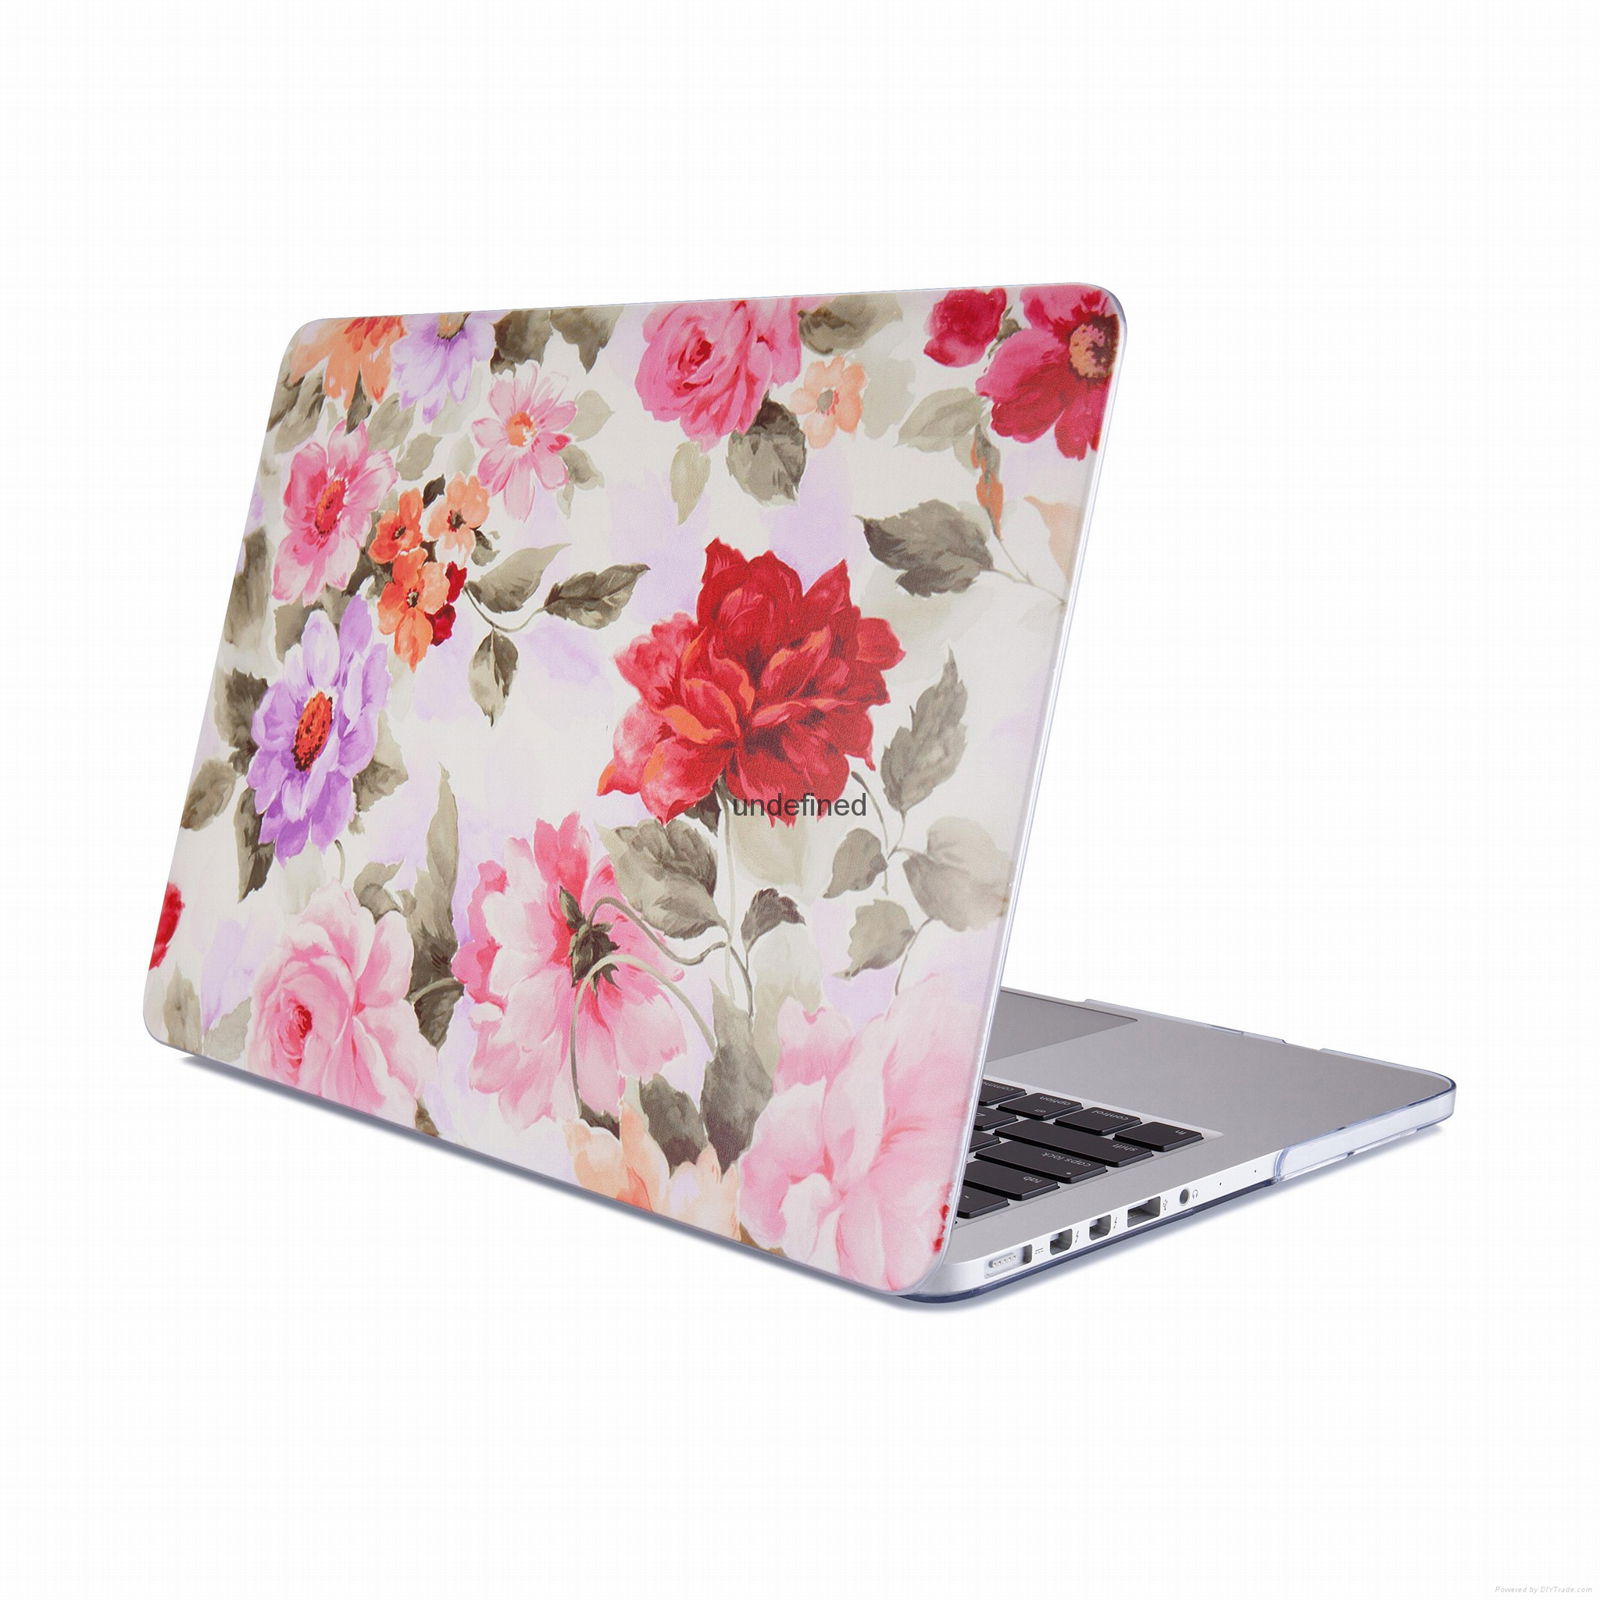 Macbook Pro New Crystal Transparent Rose Hard Case 12.13 Inch Laptop Bag 4